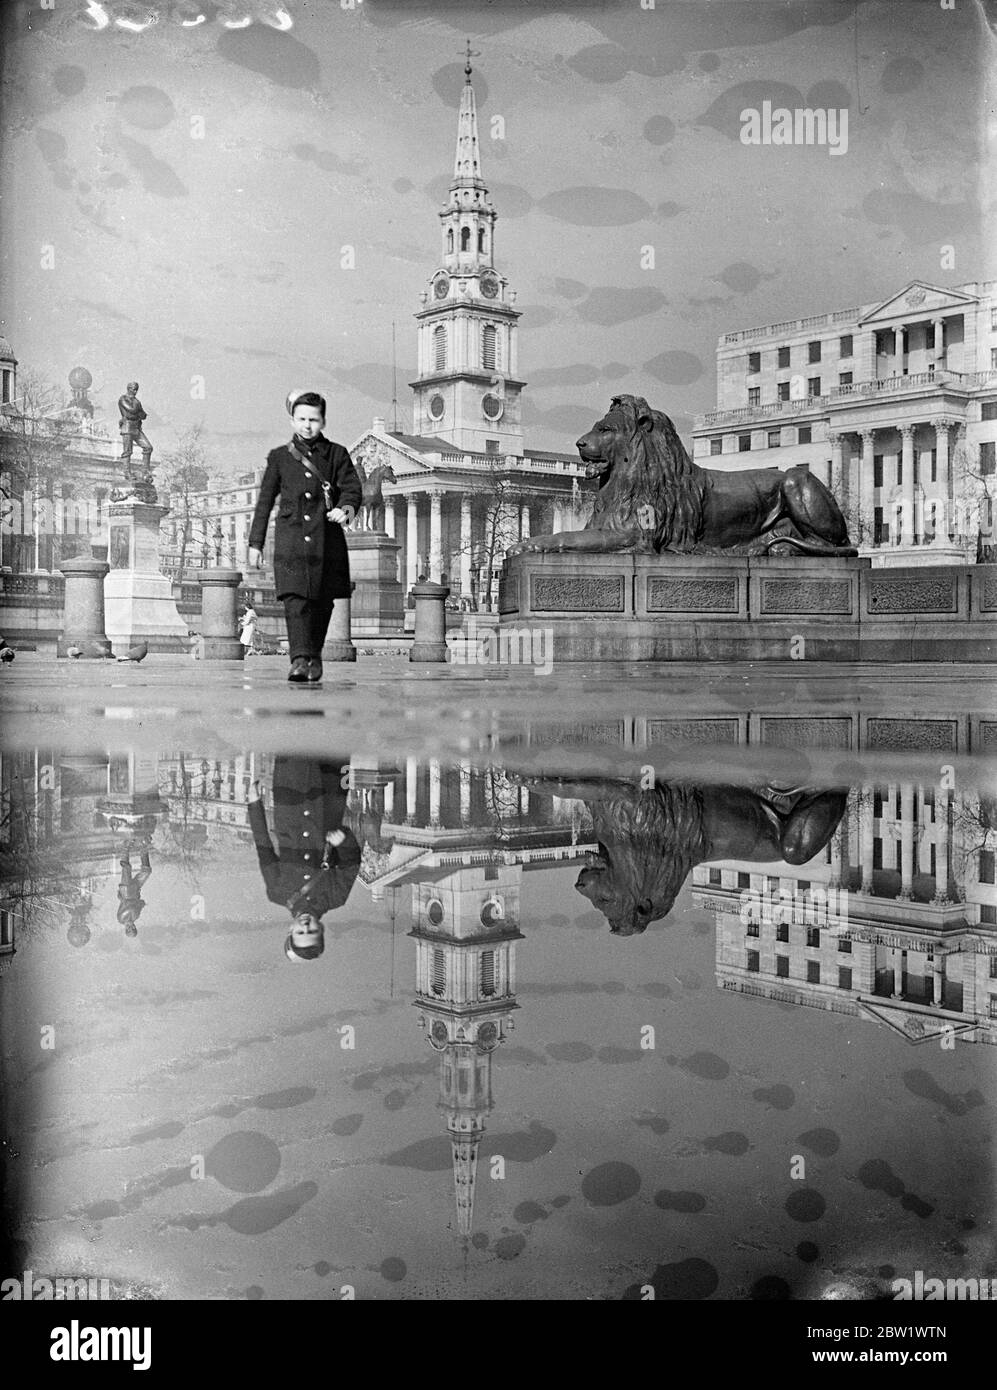 Les douches d'avril font un miroir de Trafalgar Square. L'église de Saint Martin dans les champs, la maison d'Afrique du Sud et l'un des Lions de Trafalgar Square se reflétaient dans un bassin d'eau après la pluie. 16 avril 1937 Banque D'Images